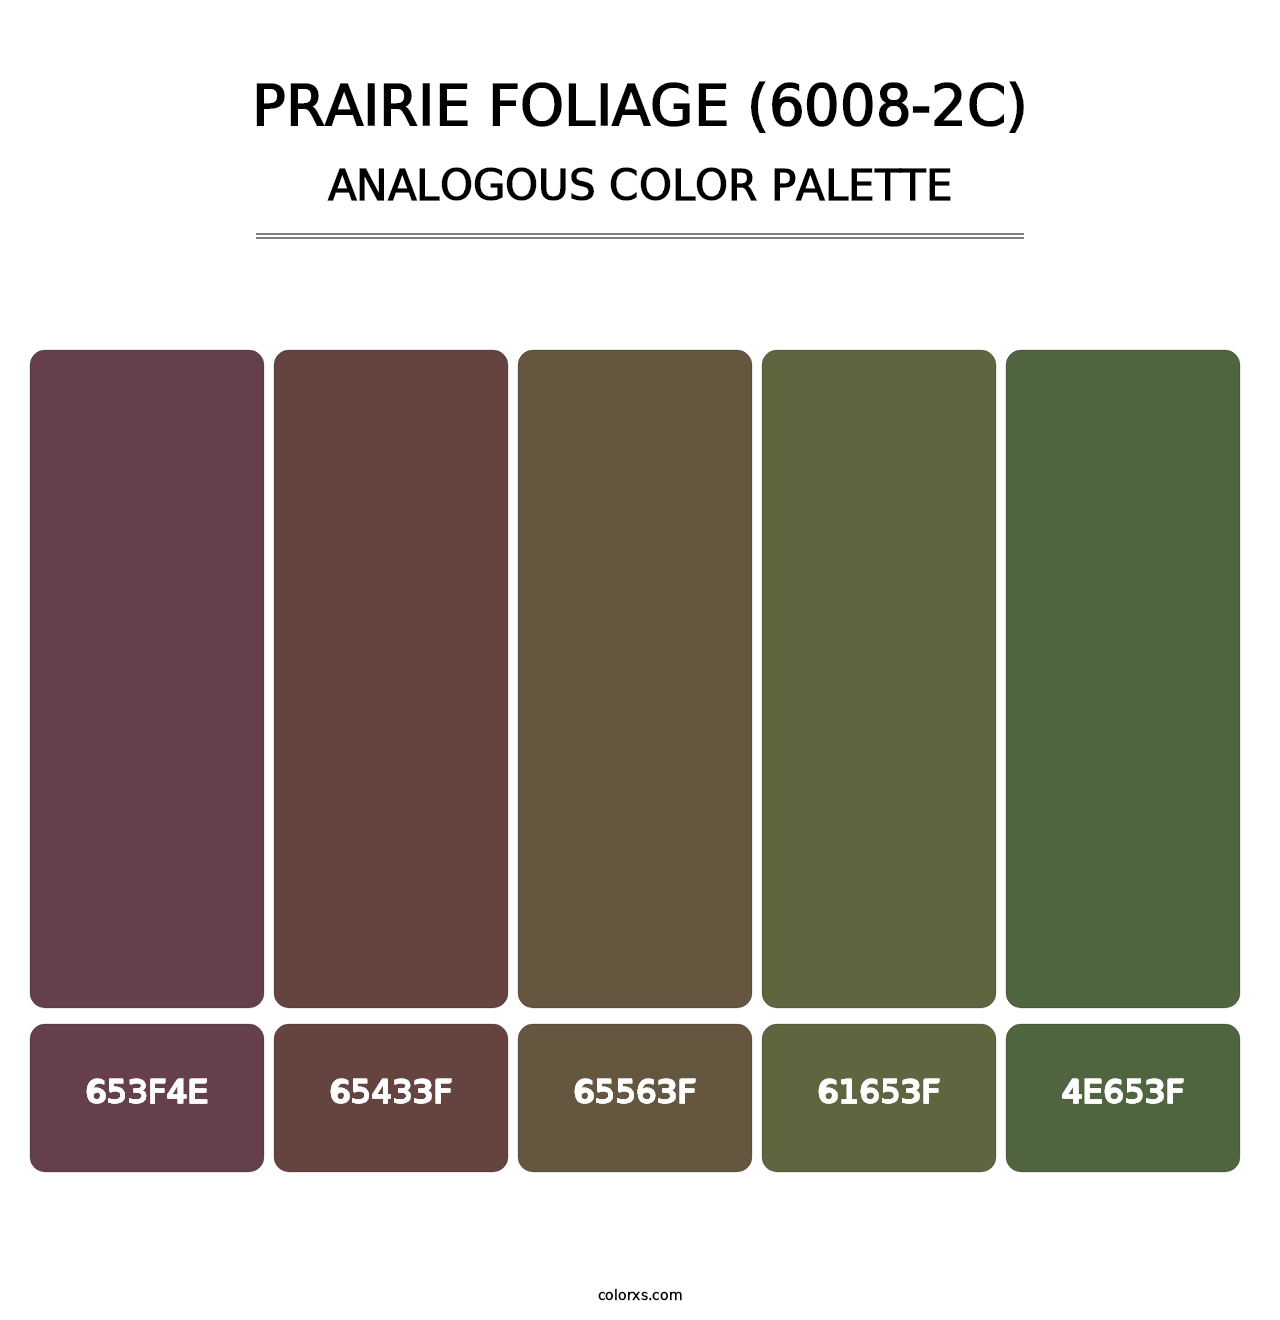 Prairie Foliage (6008-2C) - Analogous Color Palette